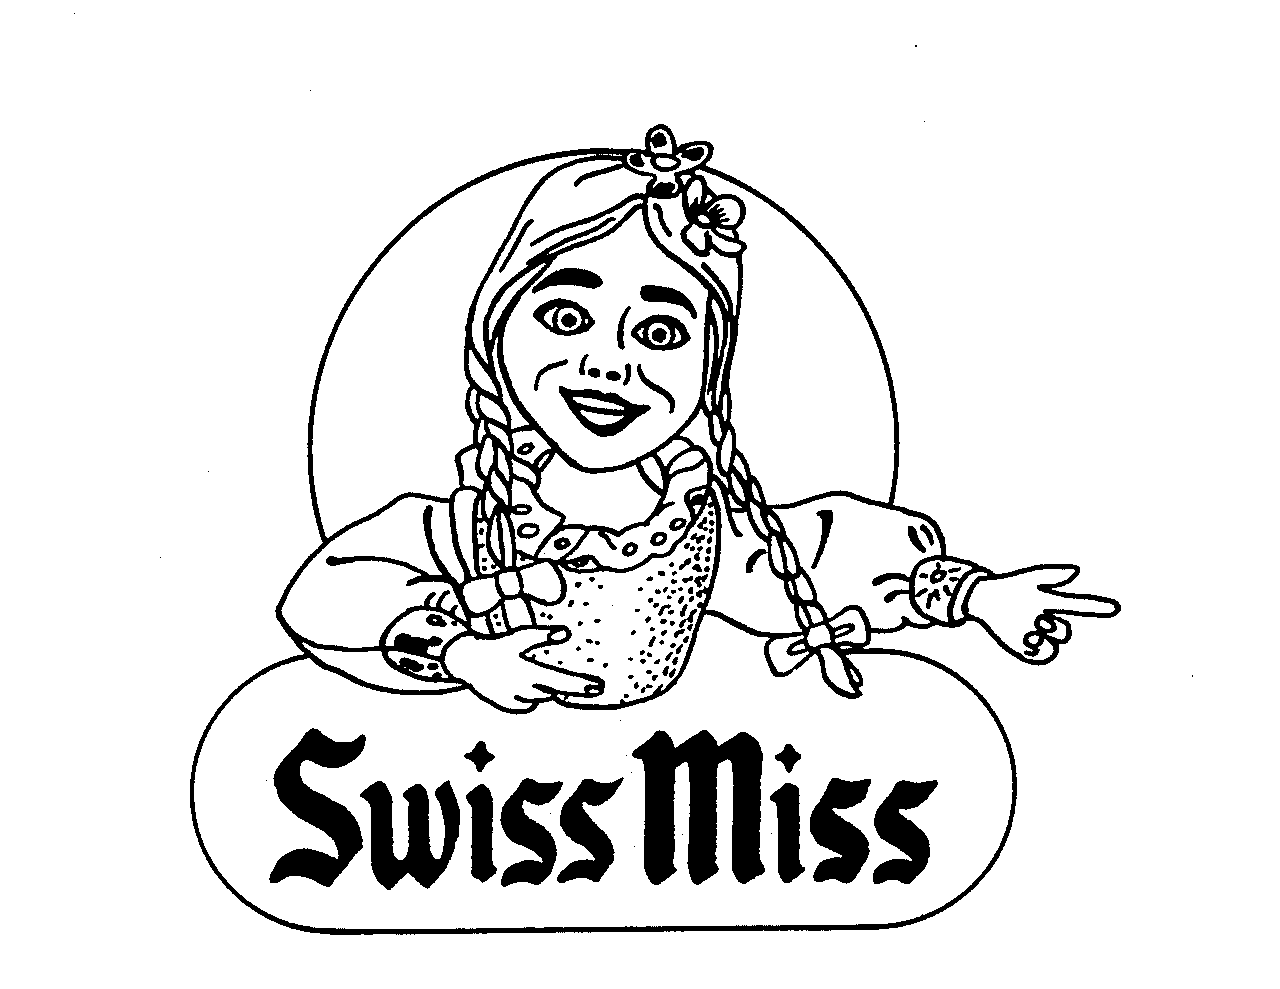 SWISS MISS